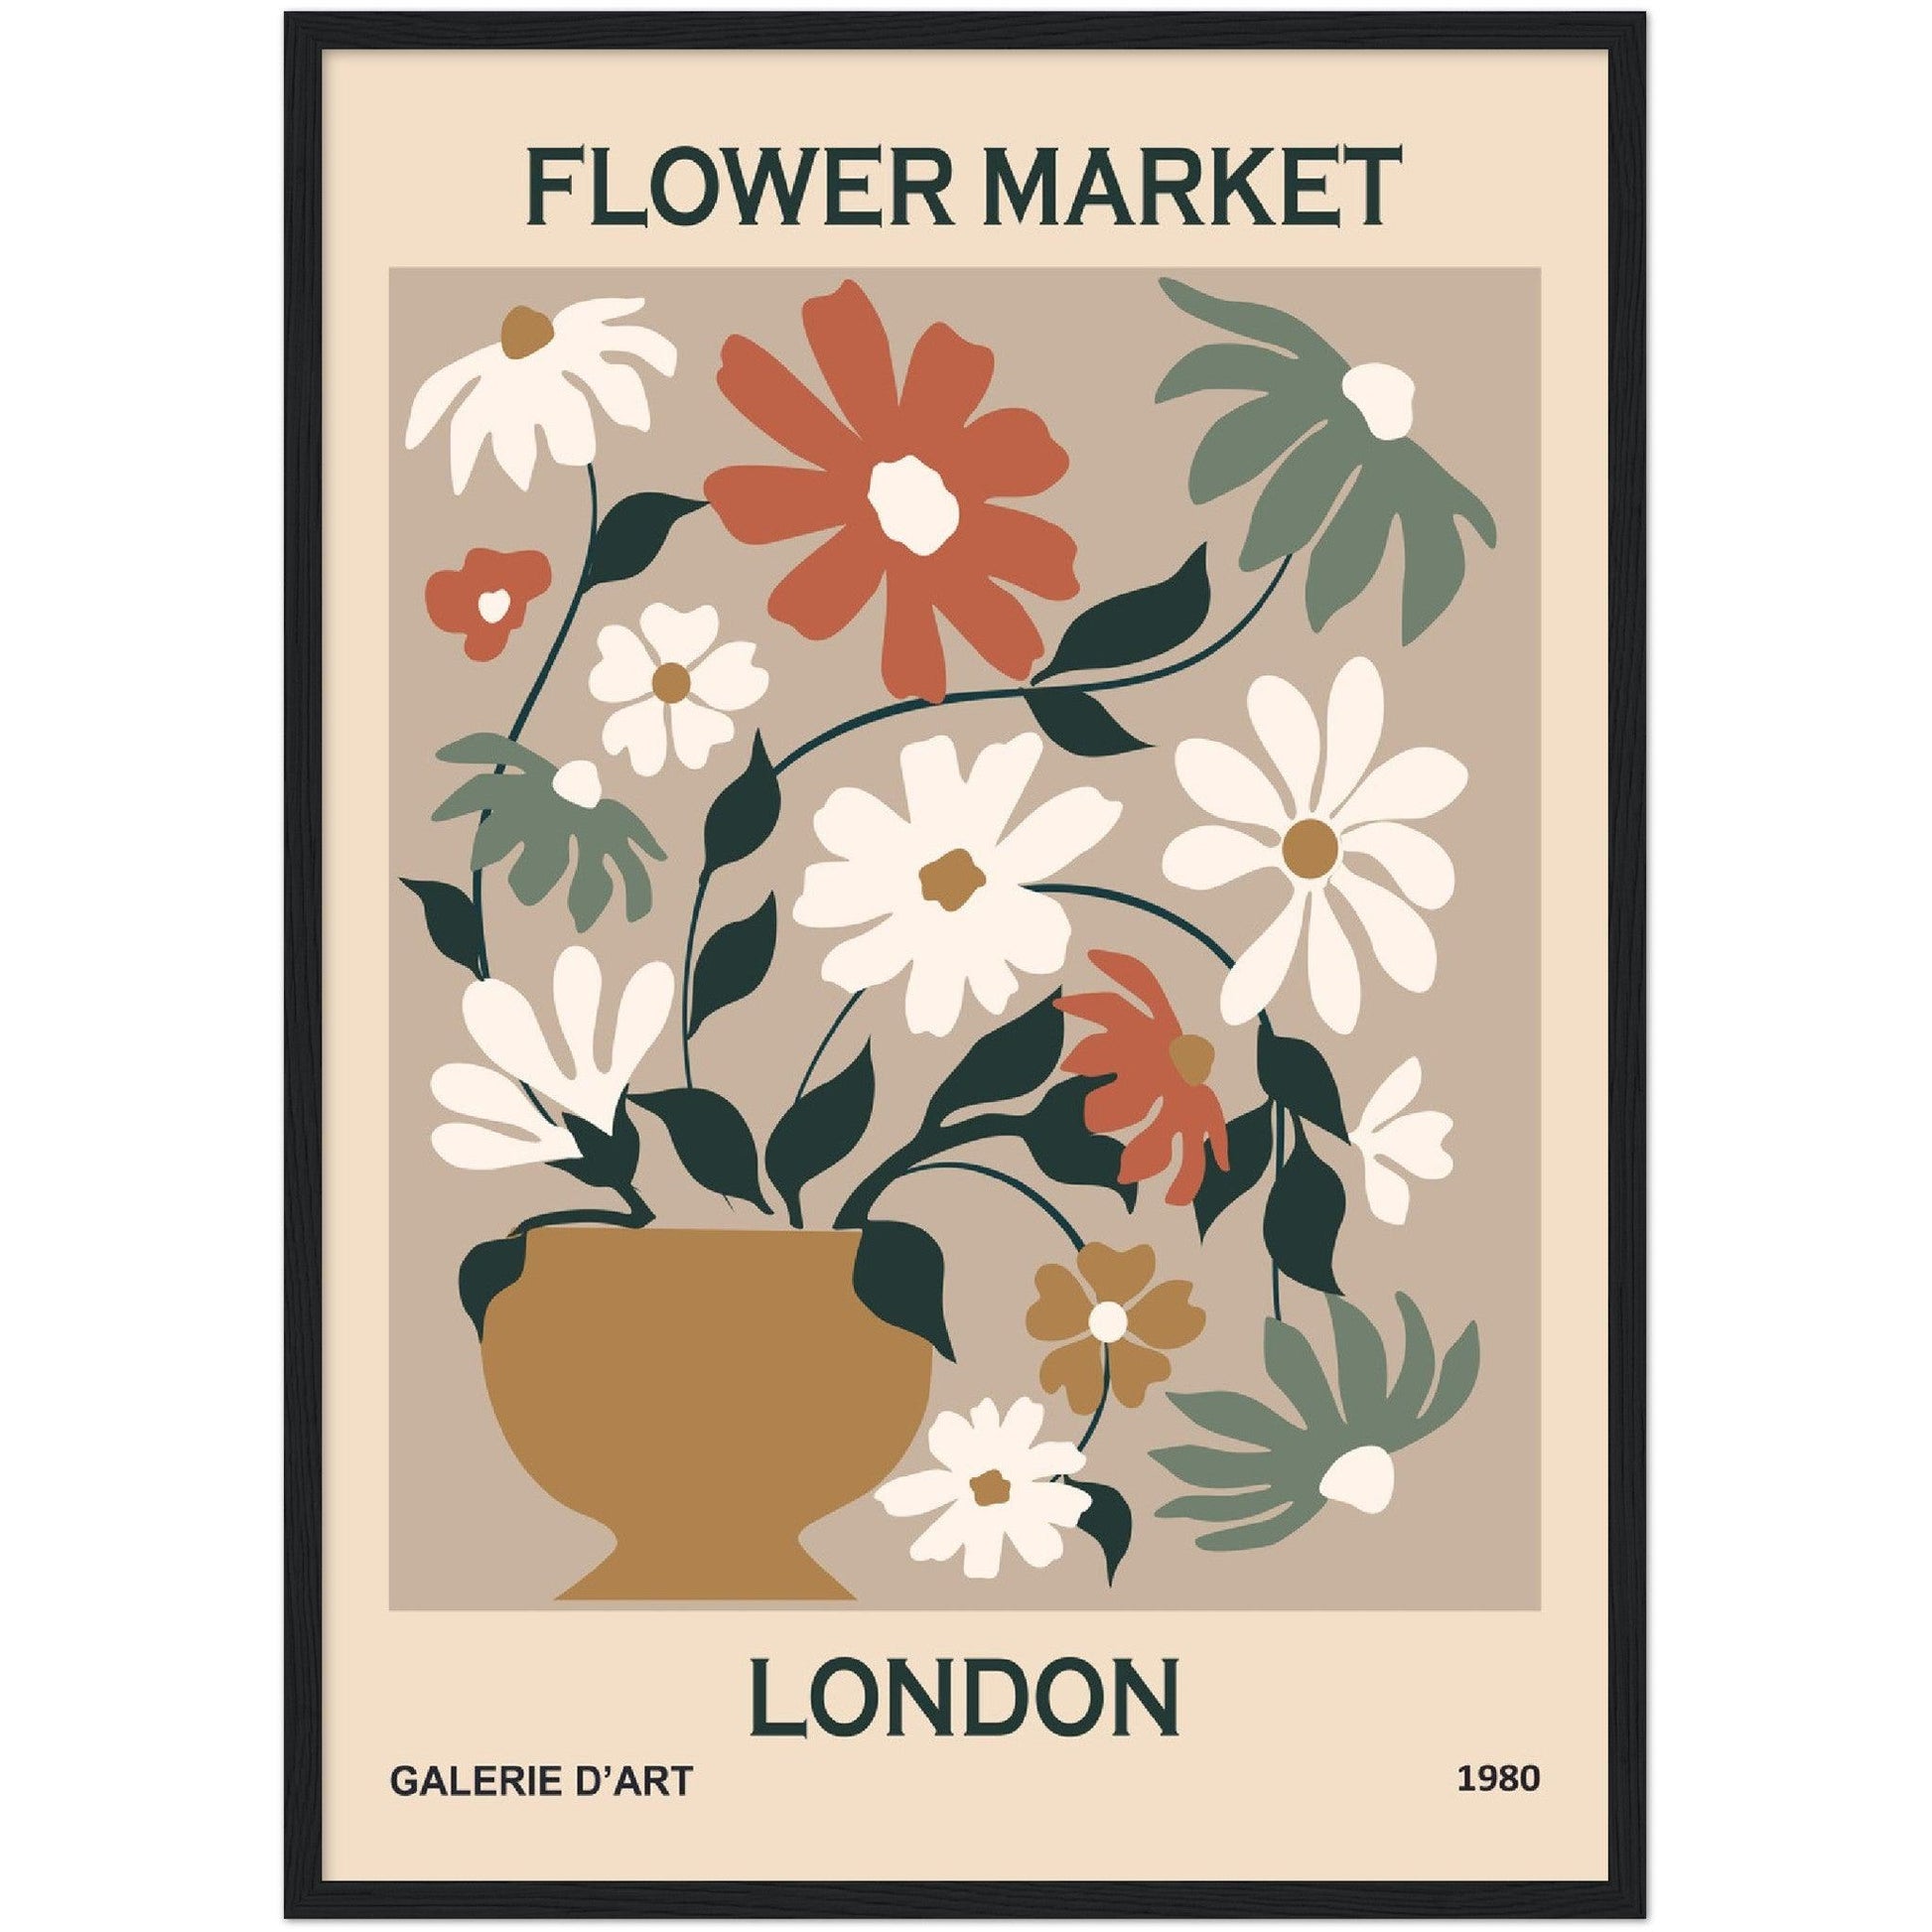 Flower Market in London - By Masters in Art - Masters in Art